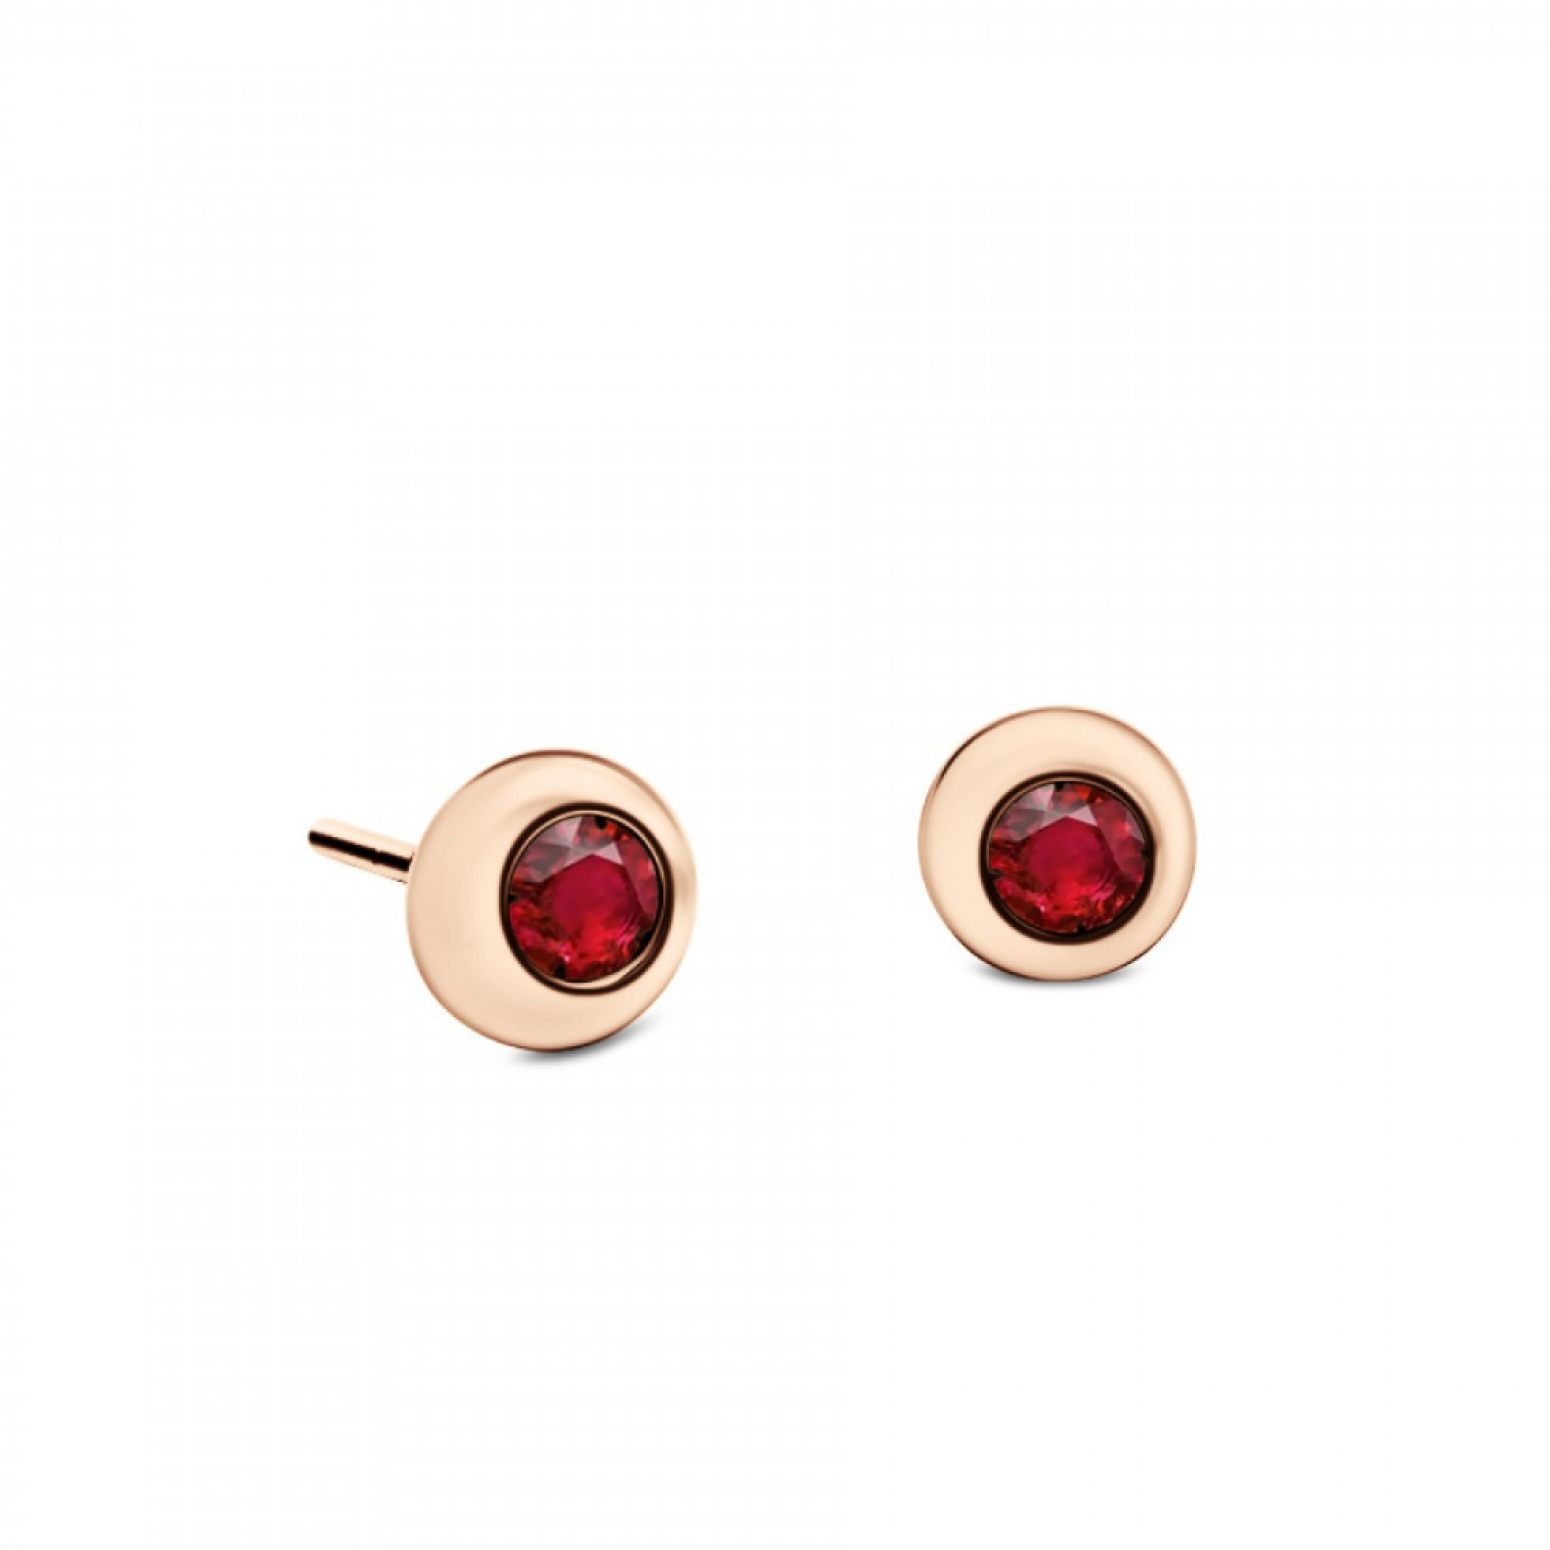 Earrings 18K pink gold with rubies 0.20ct, sk3802 EARRINGS Κοσμηματα - chrilia.gr